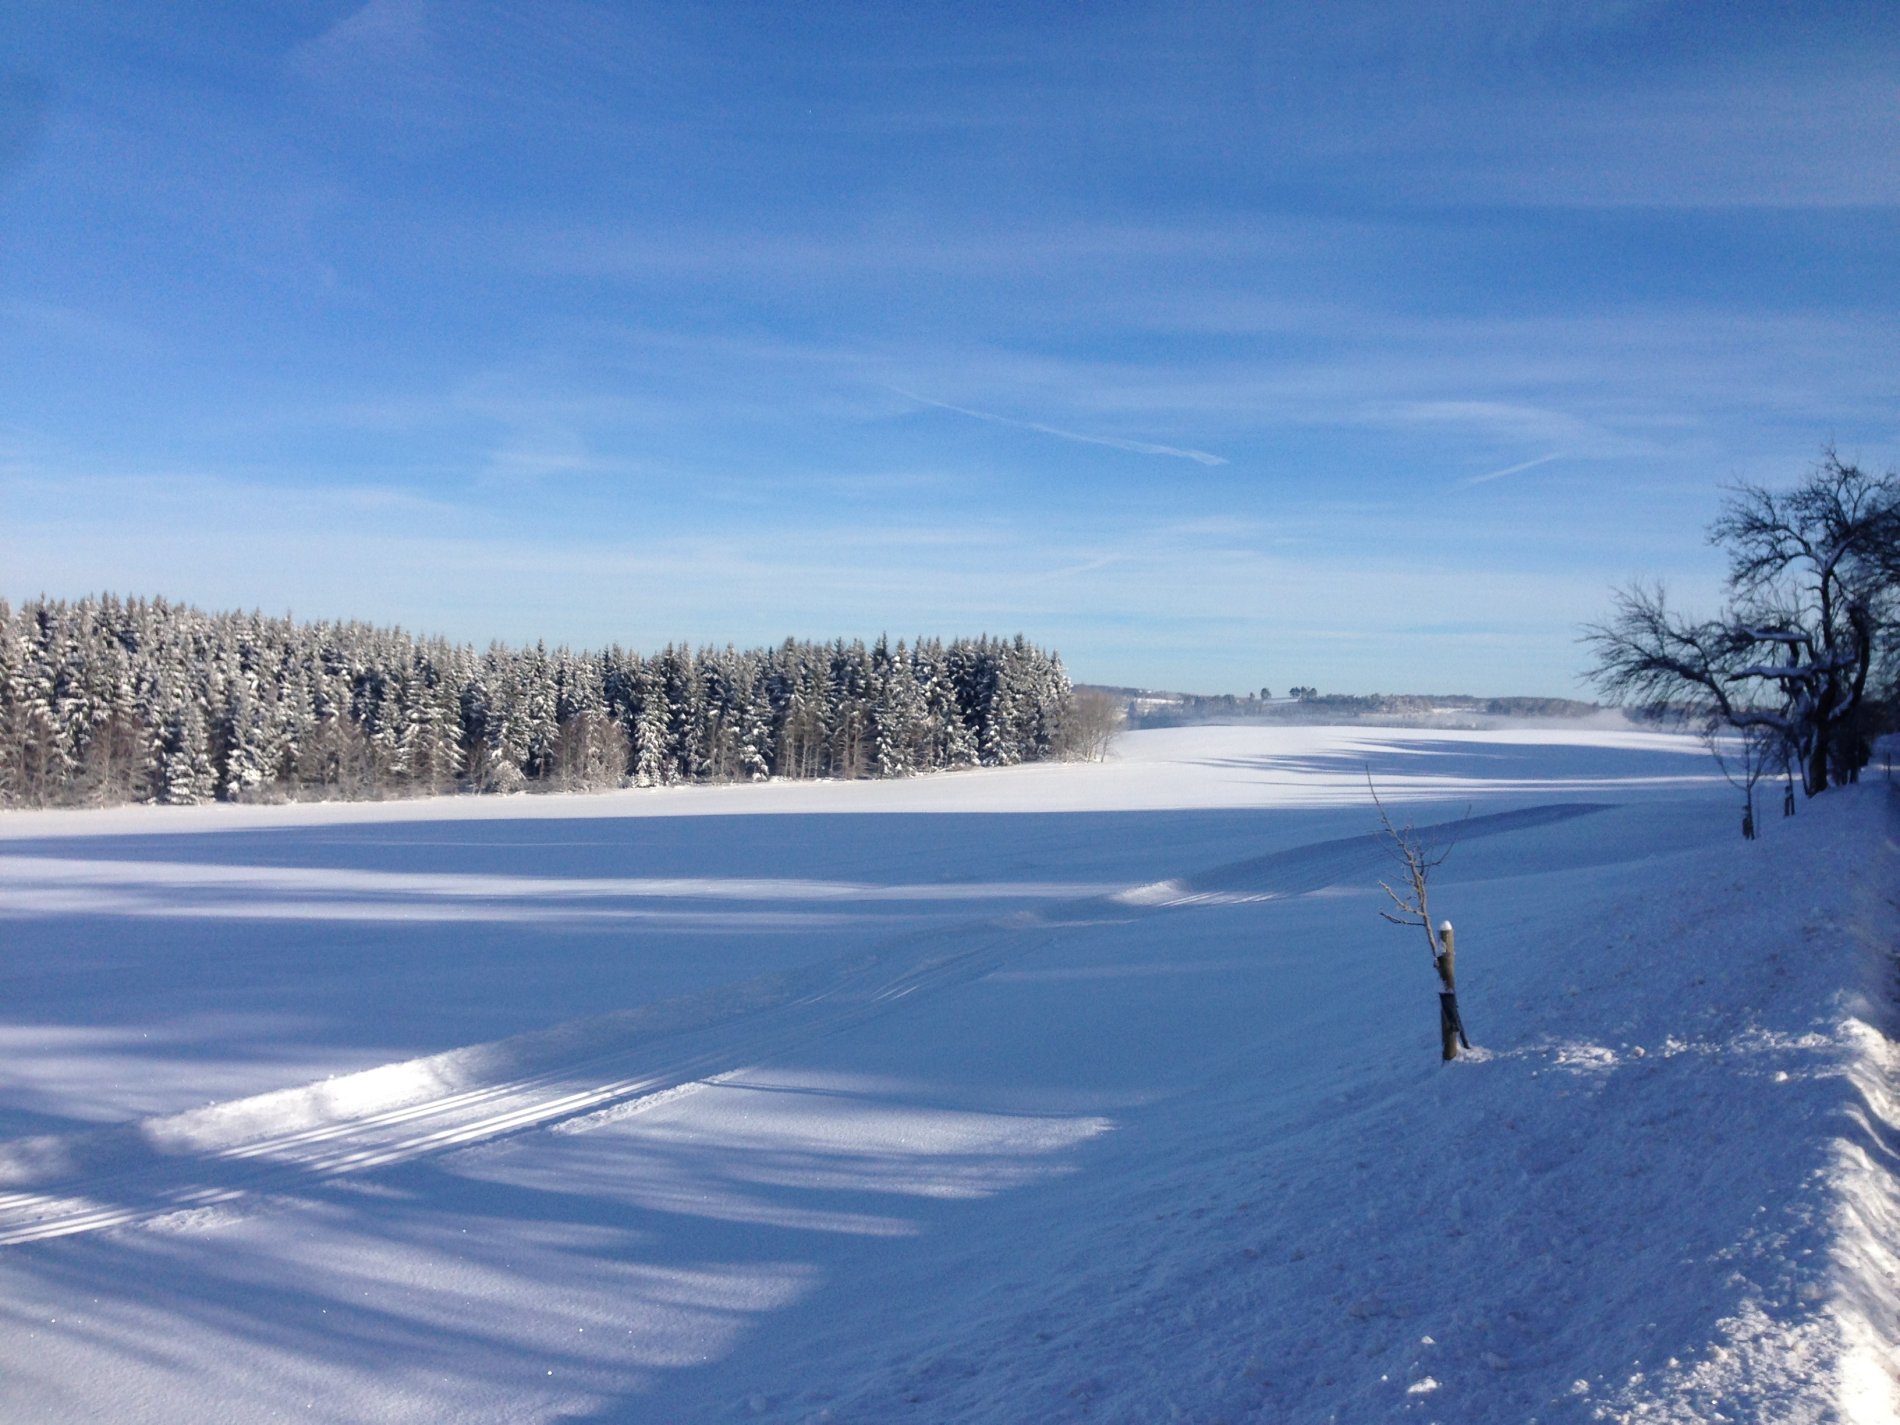 Durch eine schneebedeckte Landschaft zieht sich eine klassische Loipe. Rechts ist der Schnee zu einem kleinen Hügel aufgeschoben. Am Horizont ist Wald. Der Himmmel ist blau. Die Bäume werfen einen langen Schatten auf den Schnee.